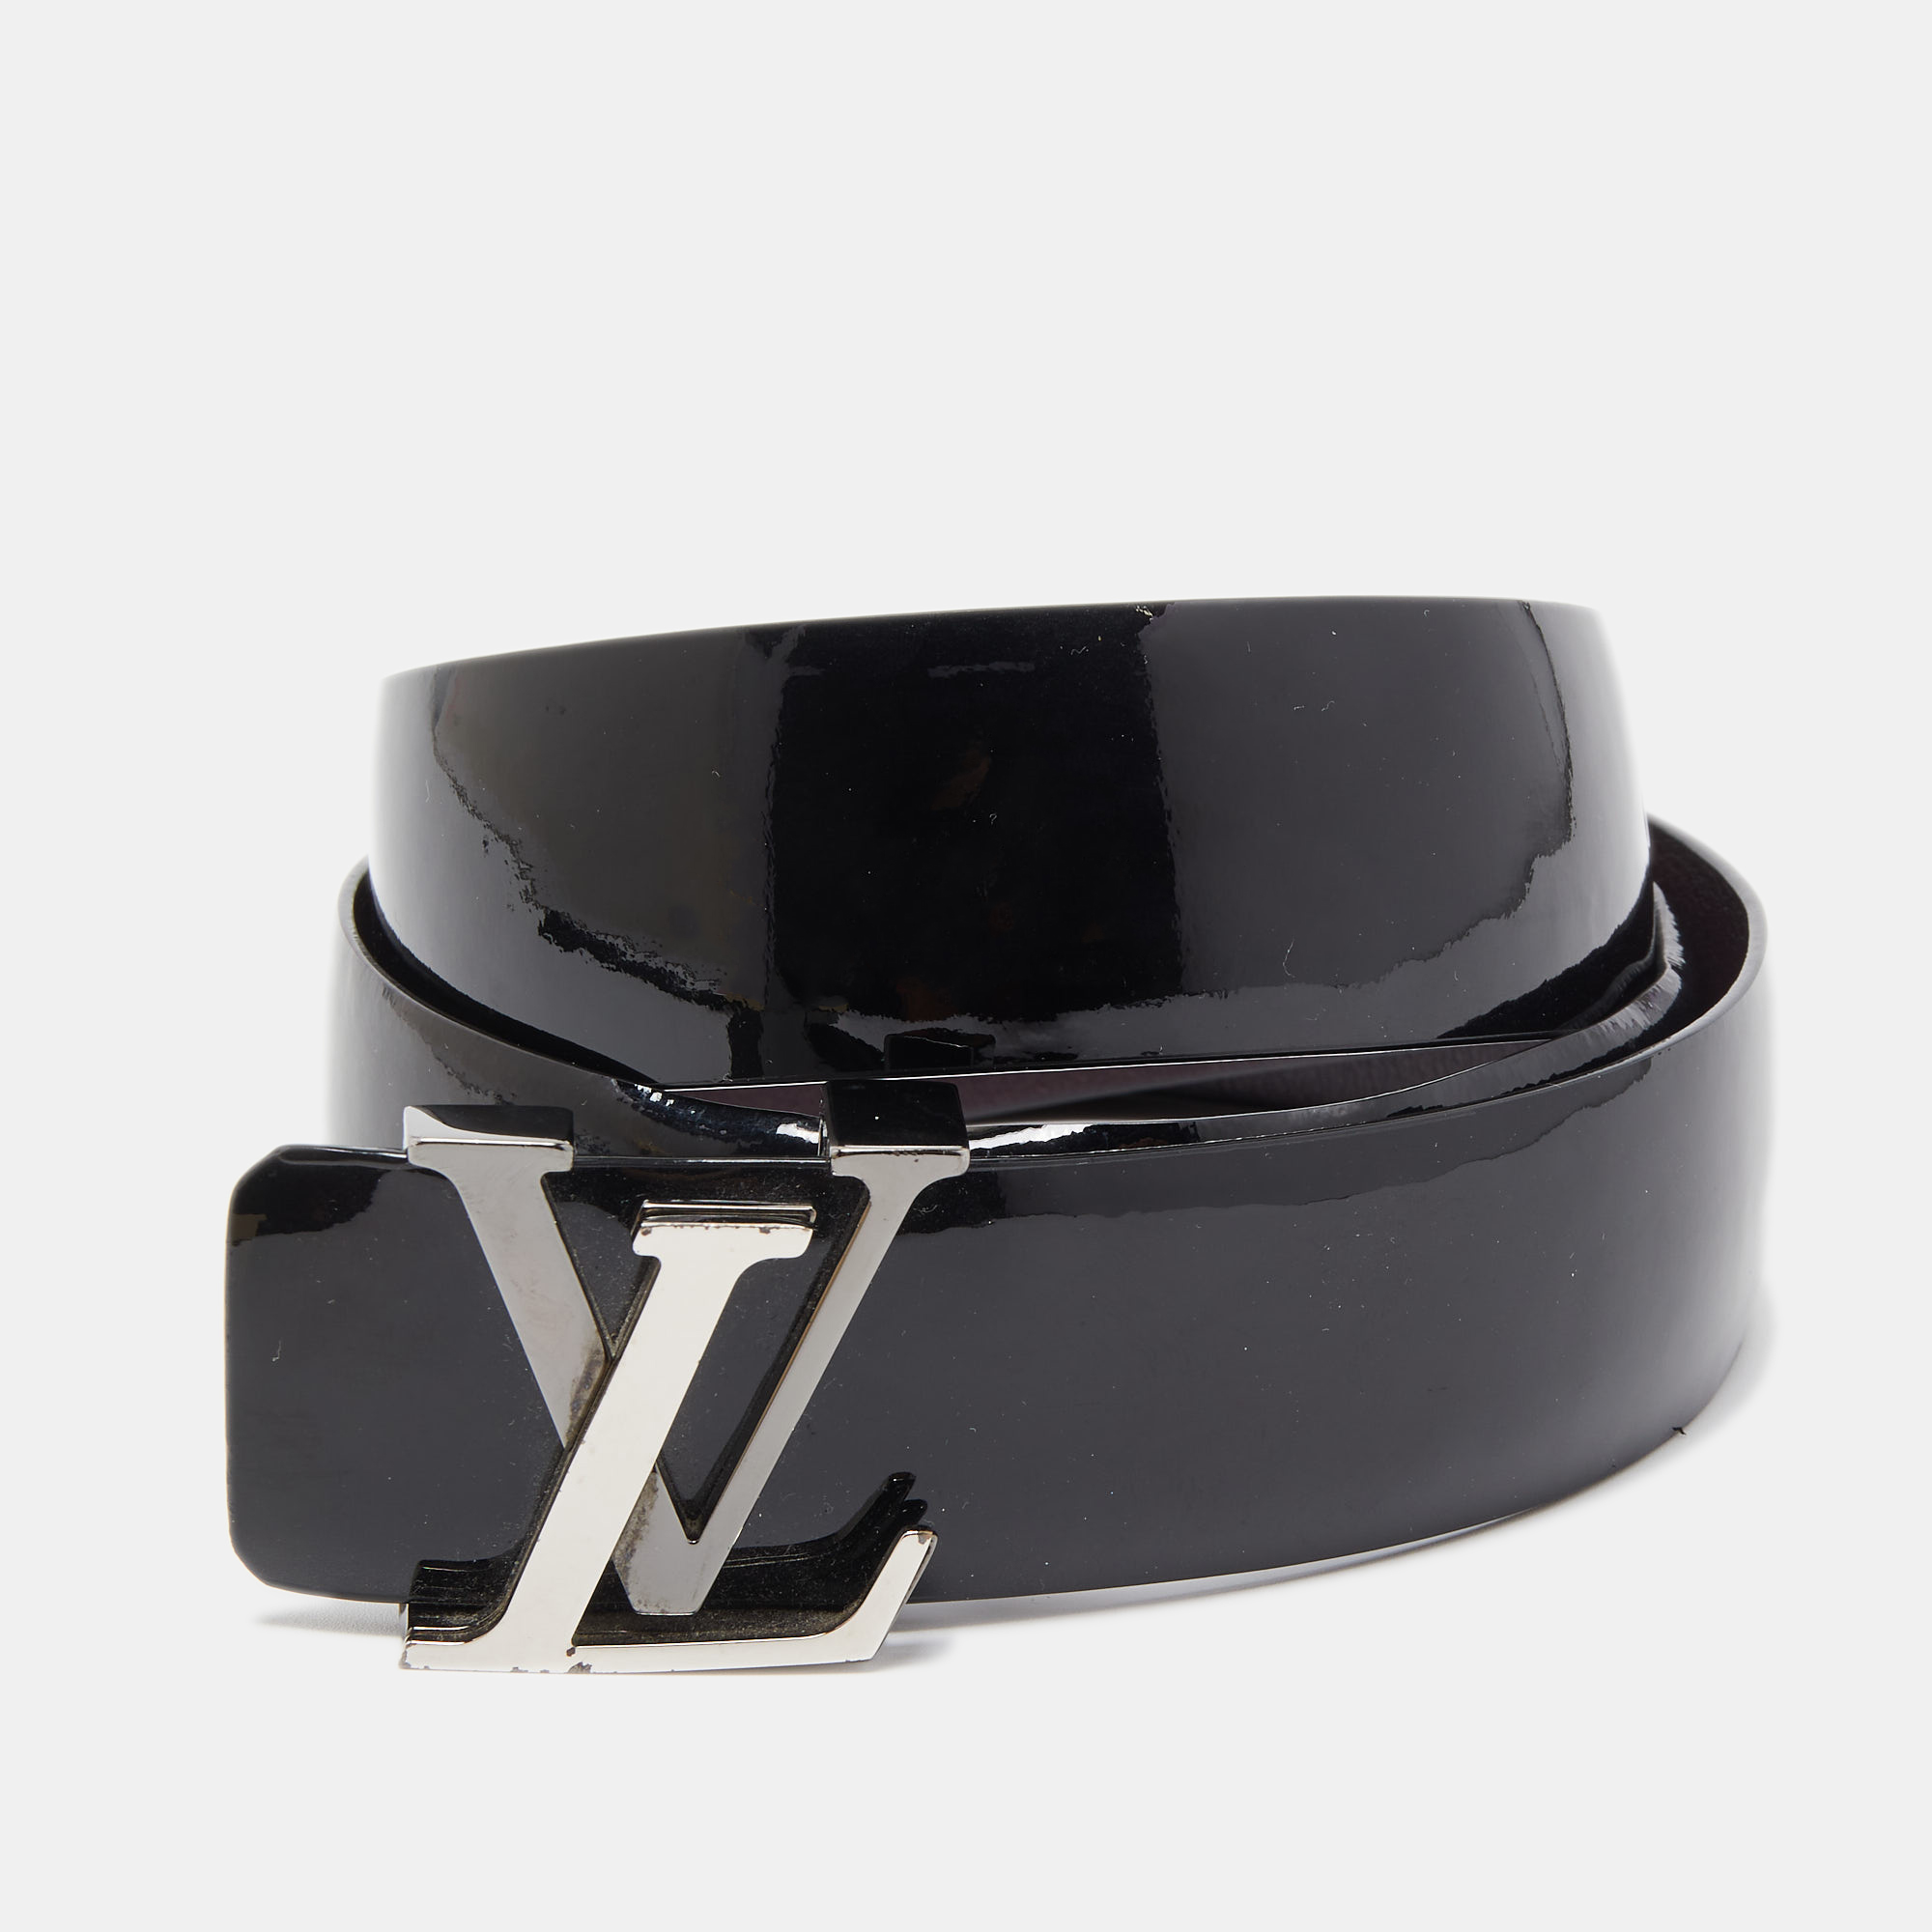 Louis Vuitton Belt 90 In Men's Belts for sale